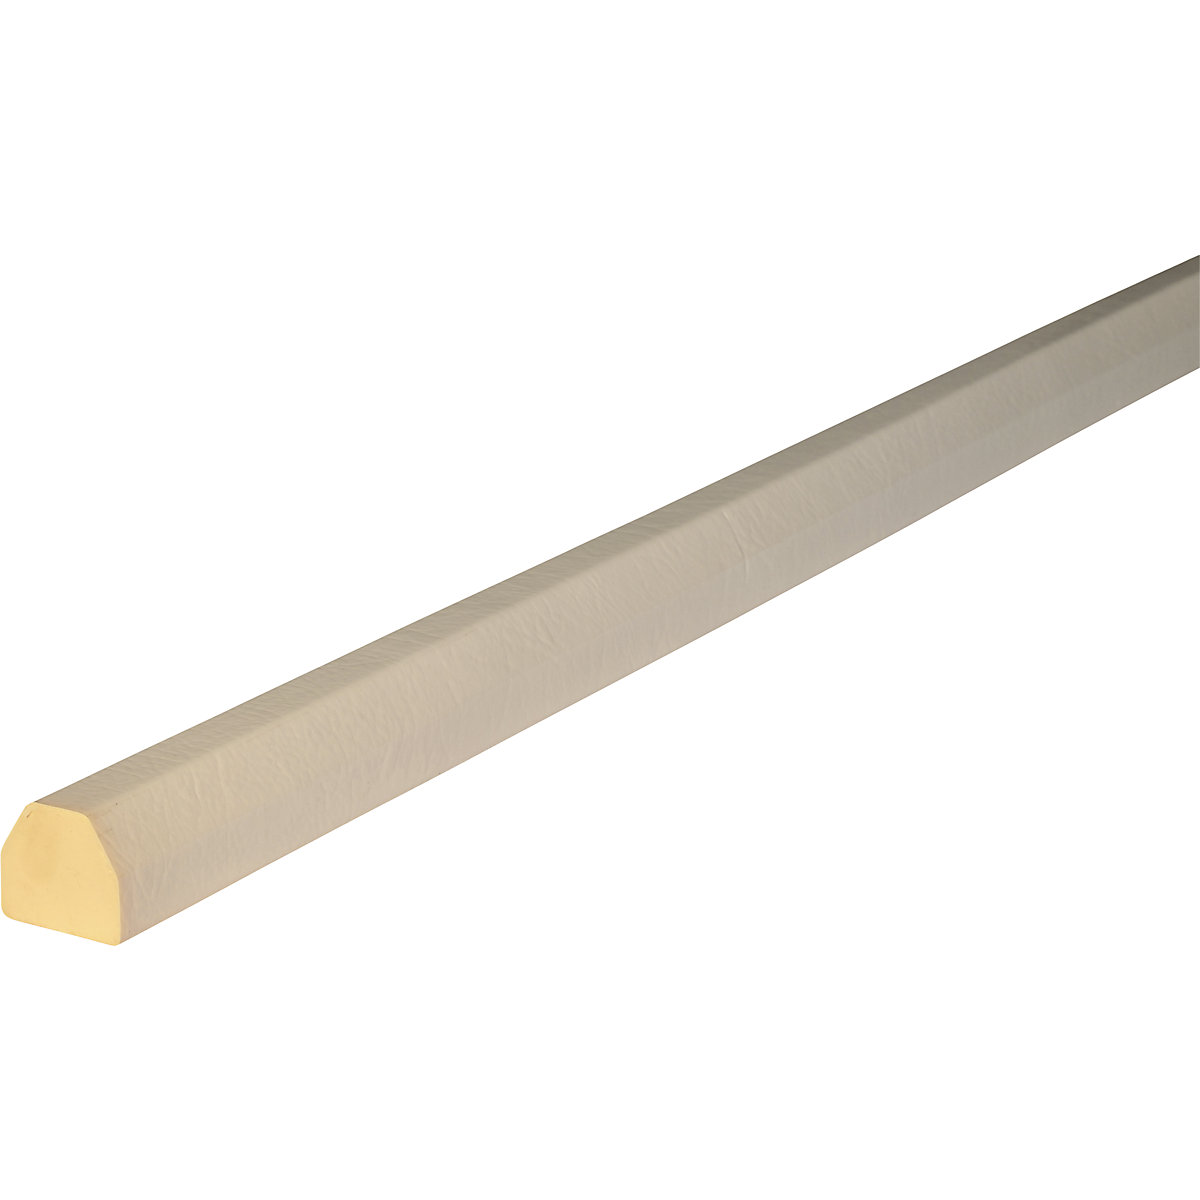 Protection des surfaces Knuffi® – SHG, type CC, 1 rouleau de 50 m, blanc